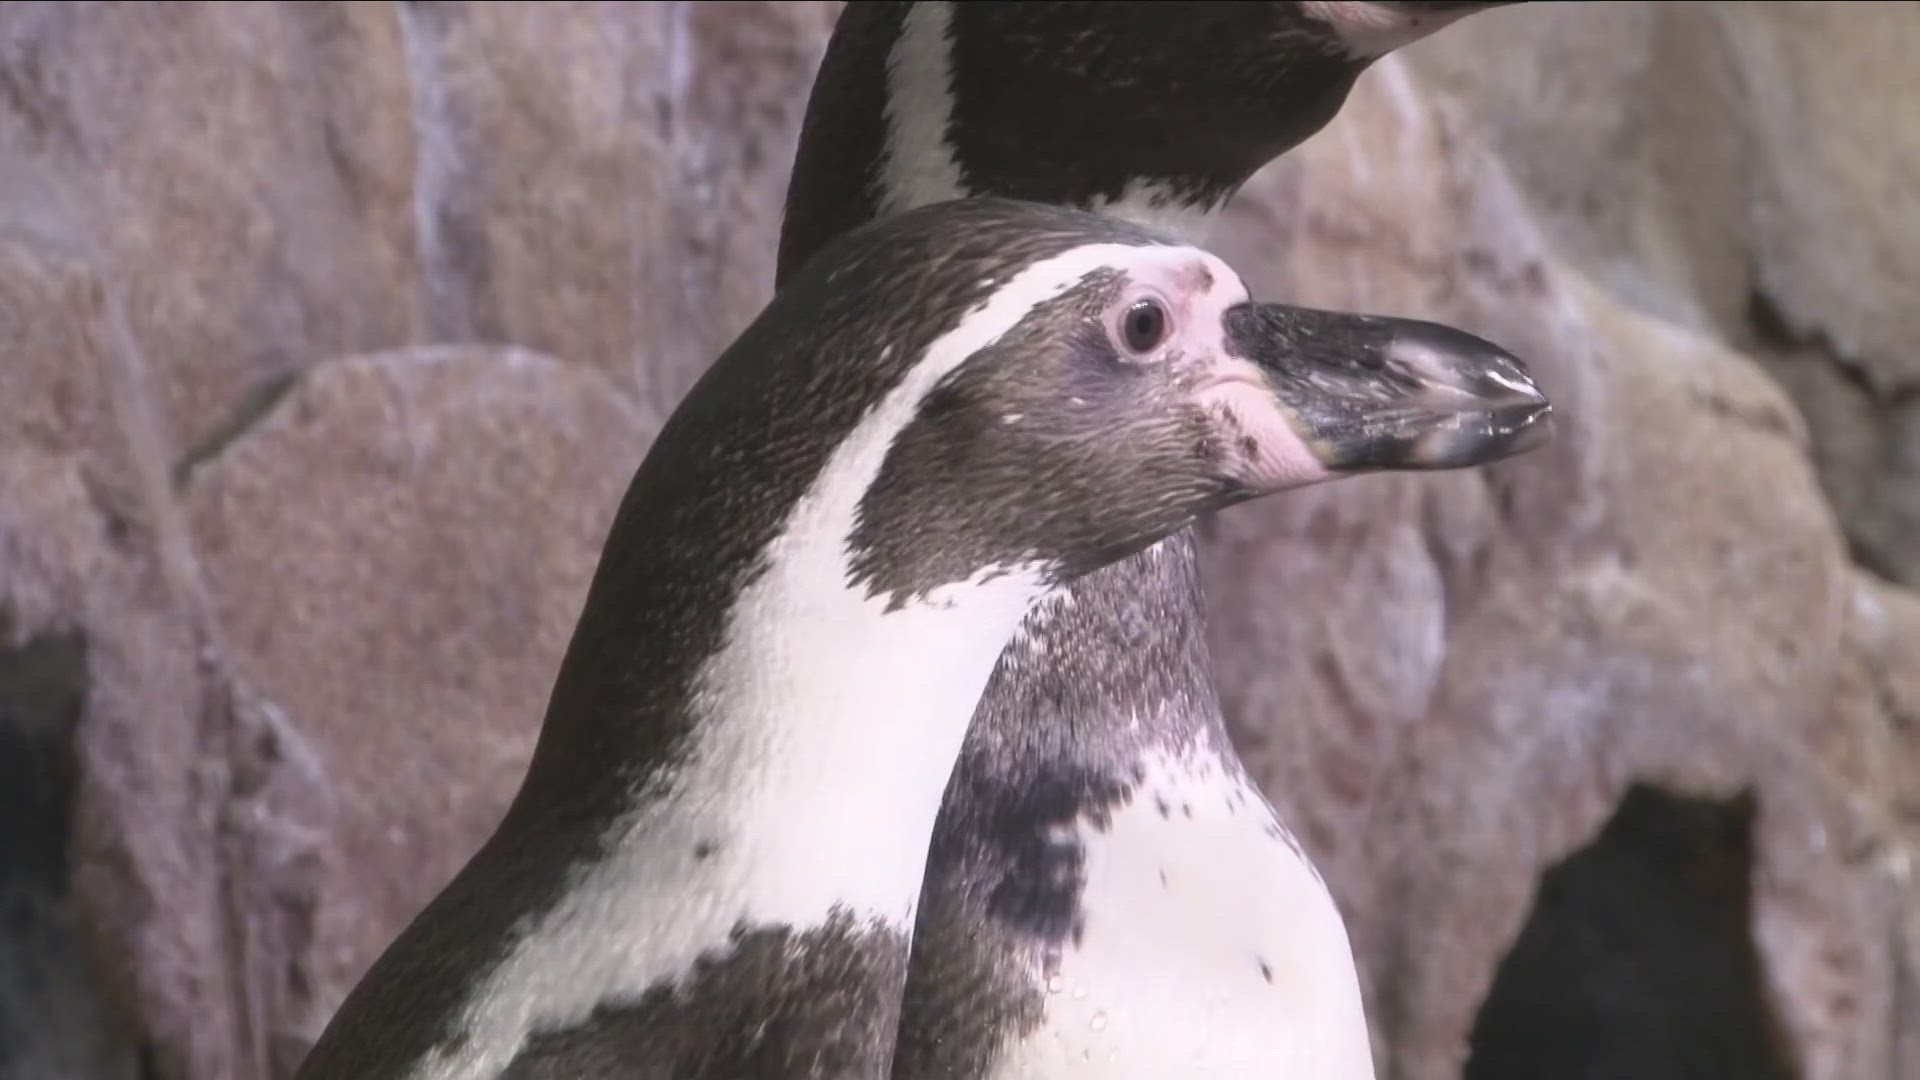 The aquarium's sixteen Humboldt penguins are fan favorite.